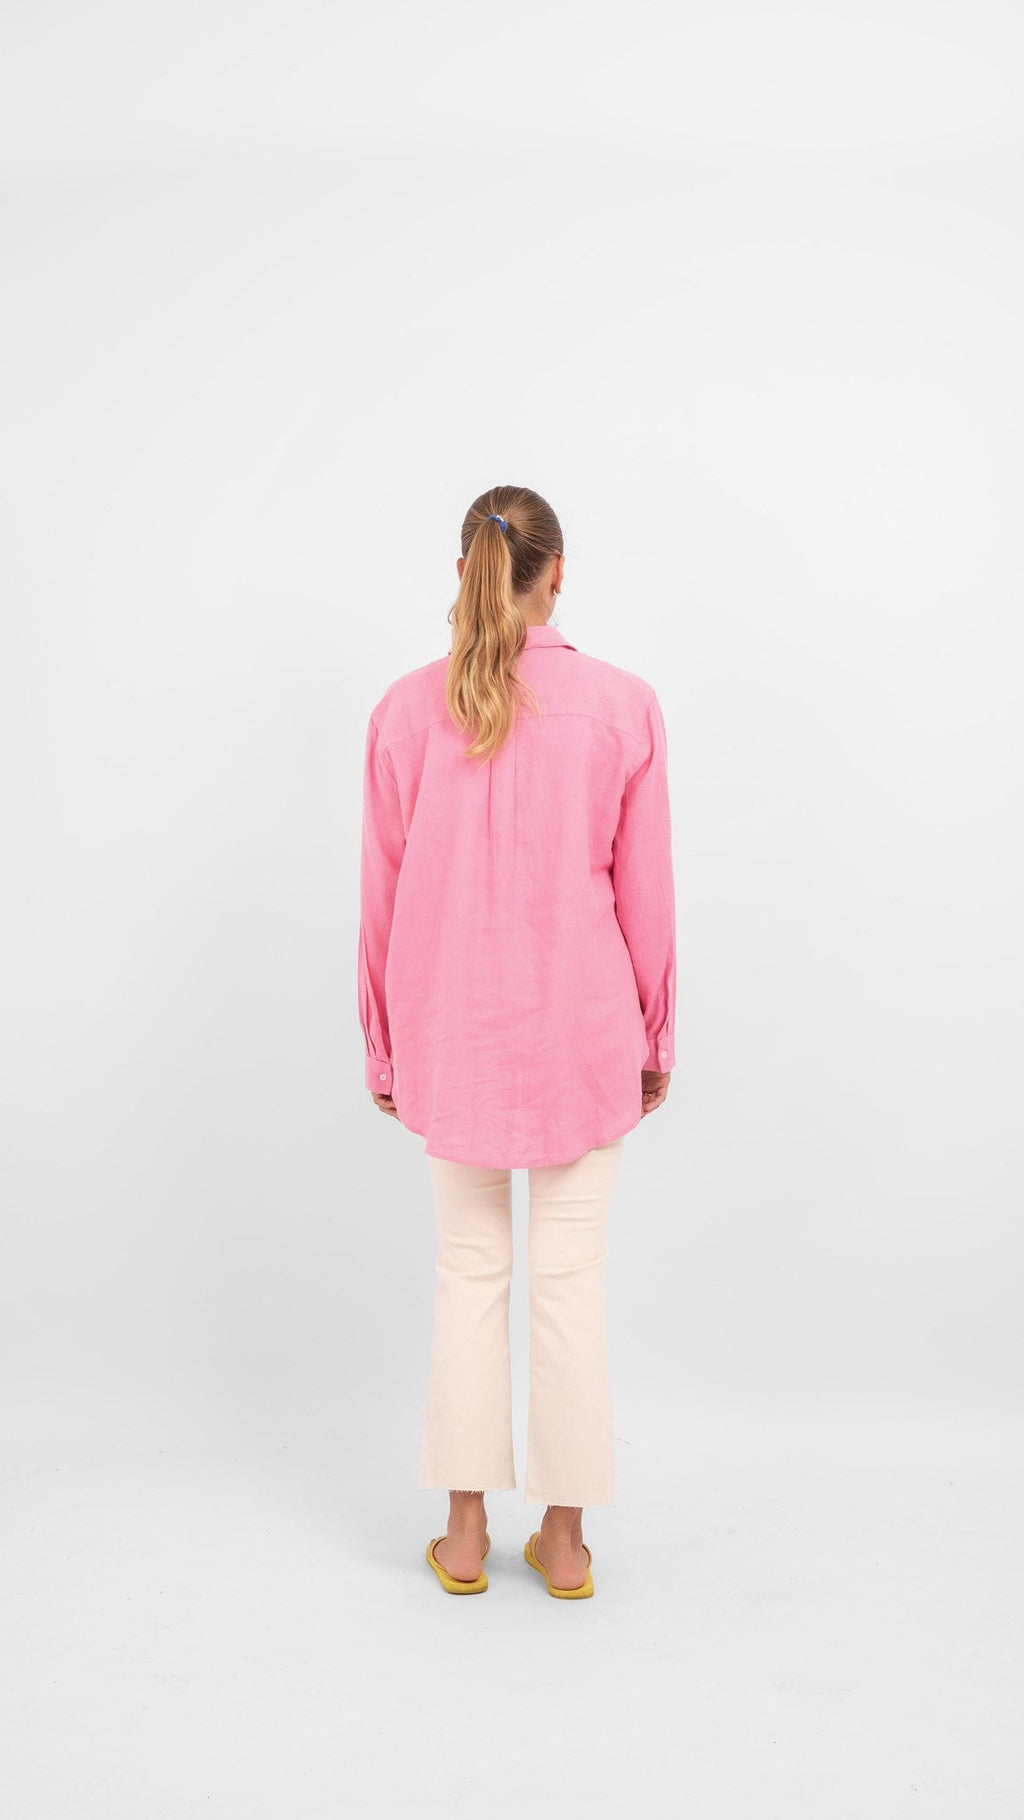 Tokijo lininiai marškinėliai - paketėlis rožinis